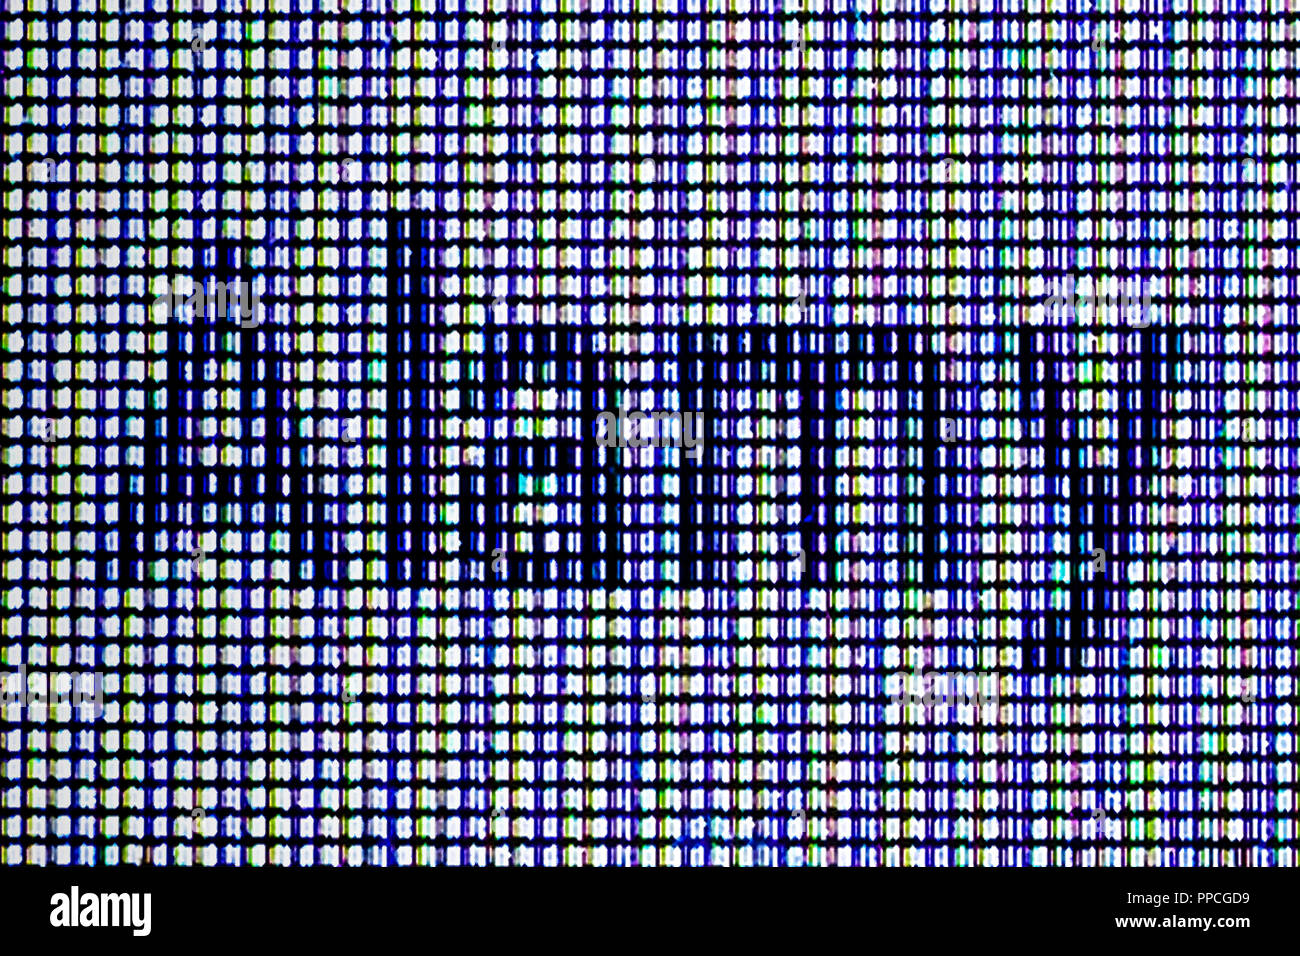 Una vista in prospettiva del logo ALAMY fatto da uno screenshot. Possiamo anche vedere un angolo di una drammatica del cielo. Foto Stock